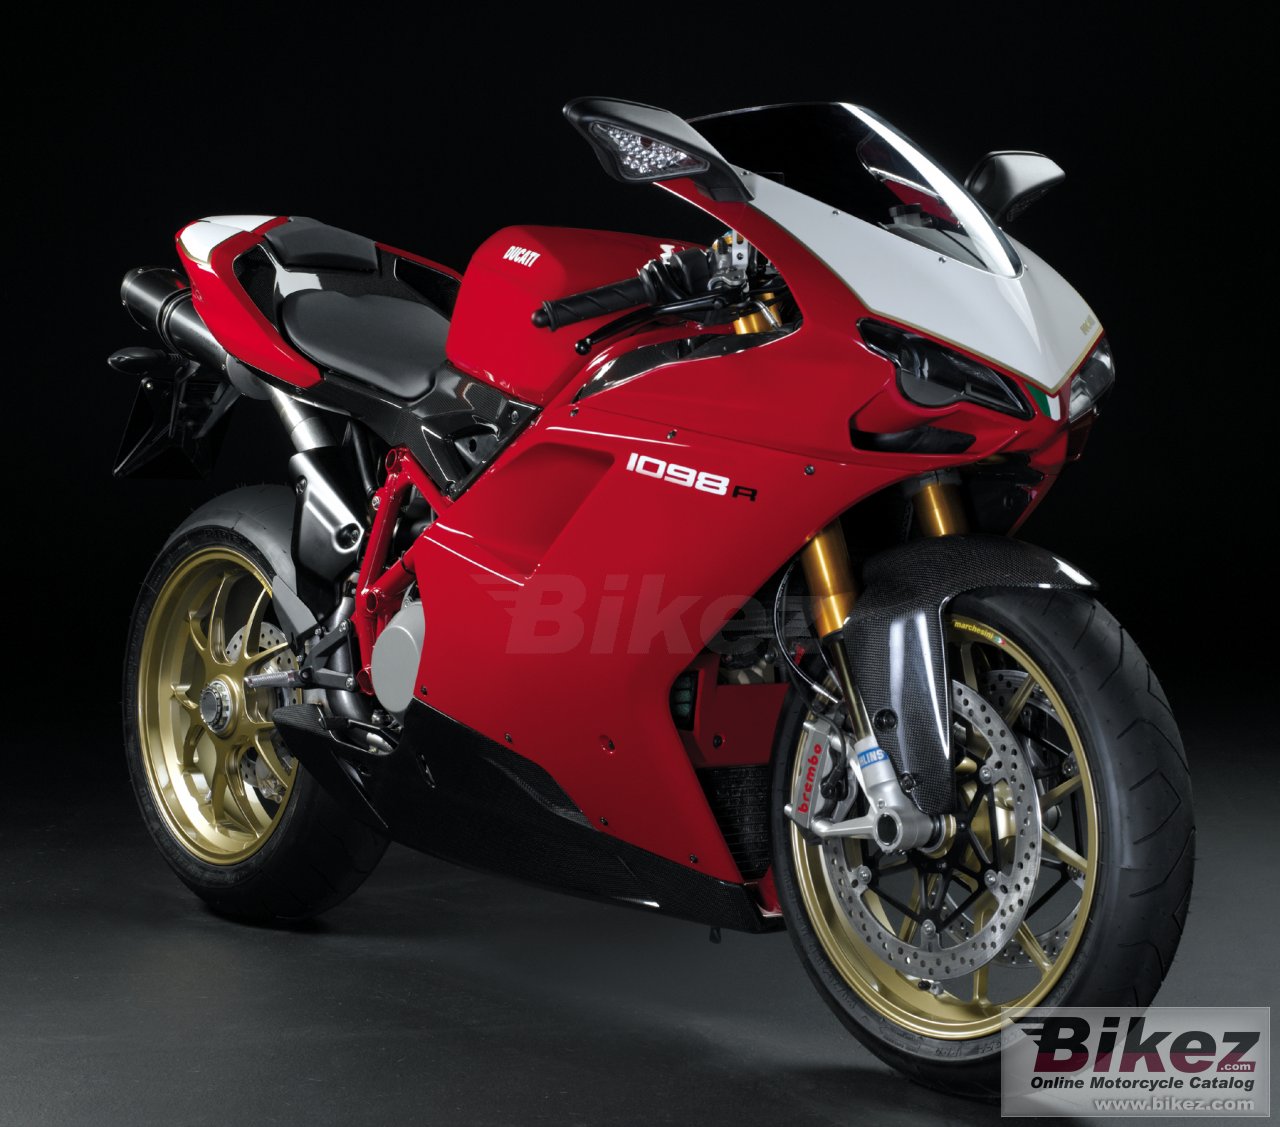 Koleksi Modifikasi Motor Ducati Superbike Terbaru Dan Terlengkap